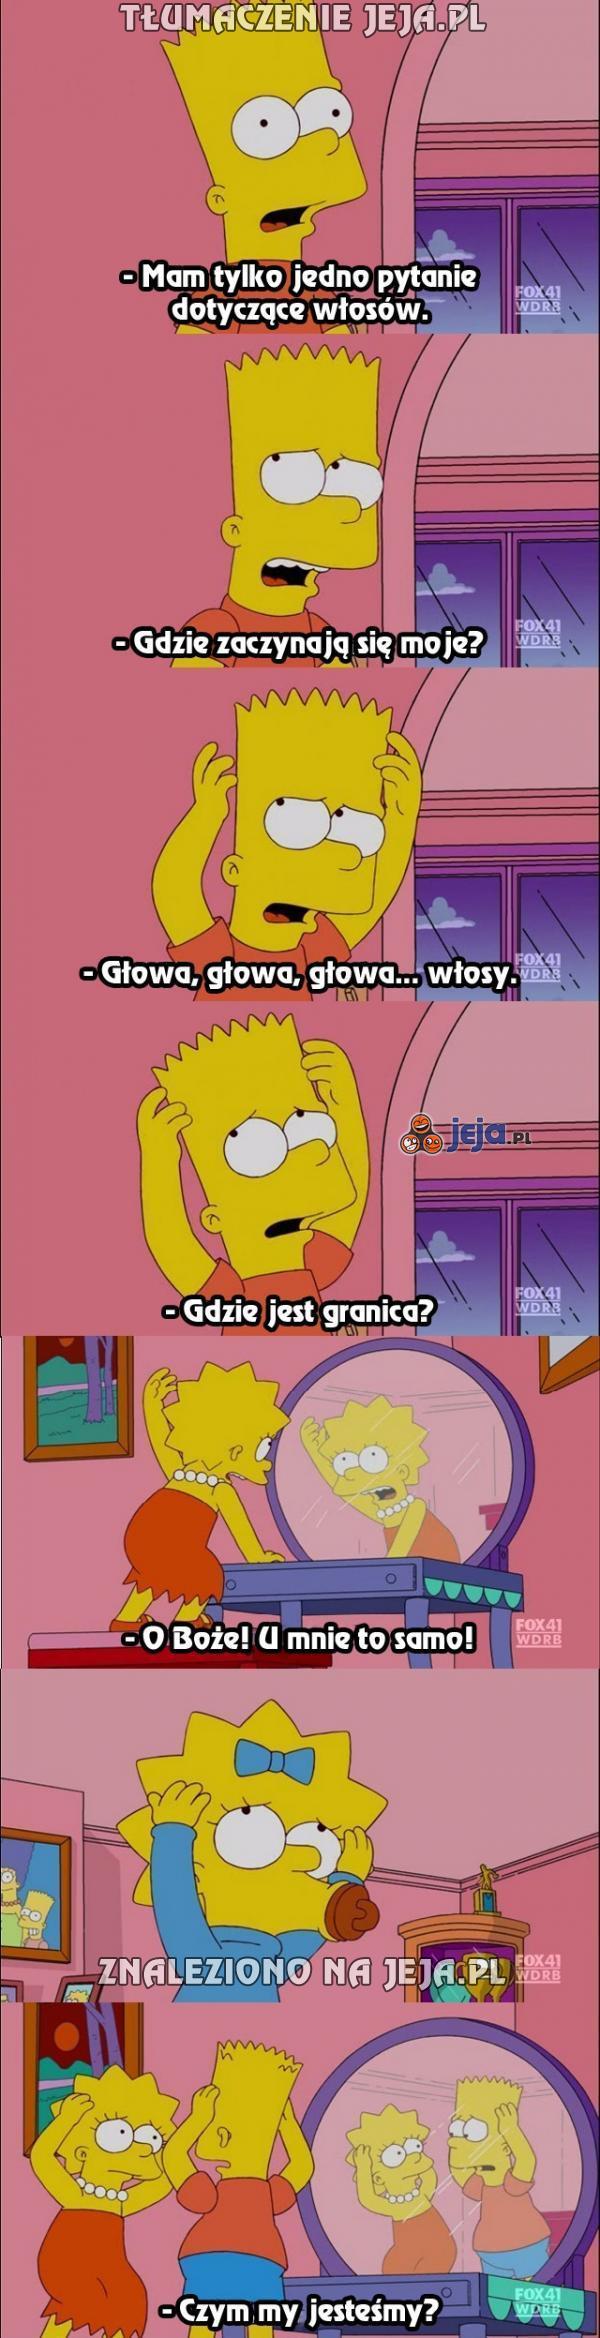 Gdy Simpsonowie zaczną za dużo myśleć...